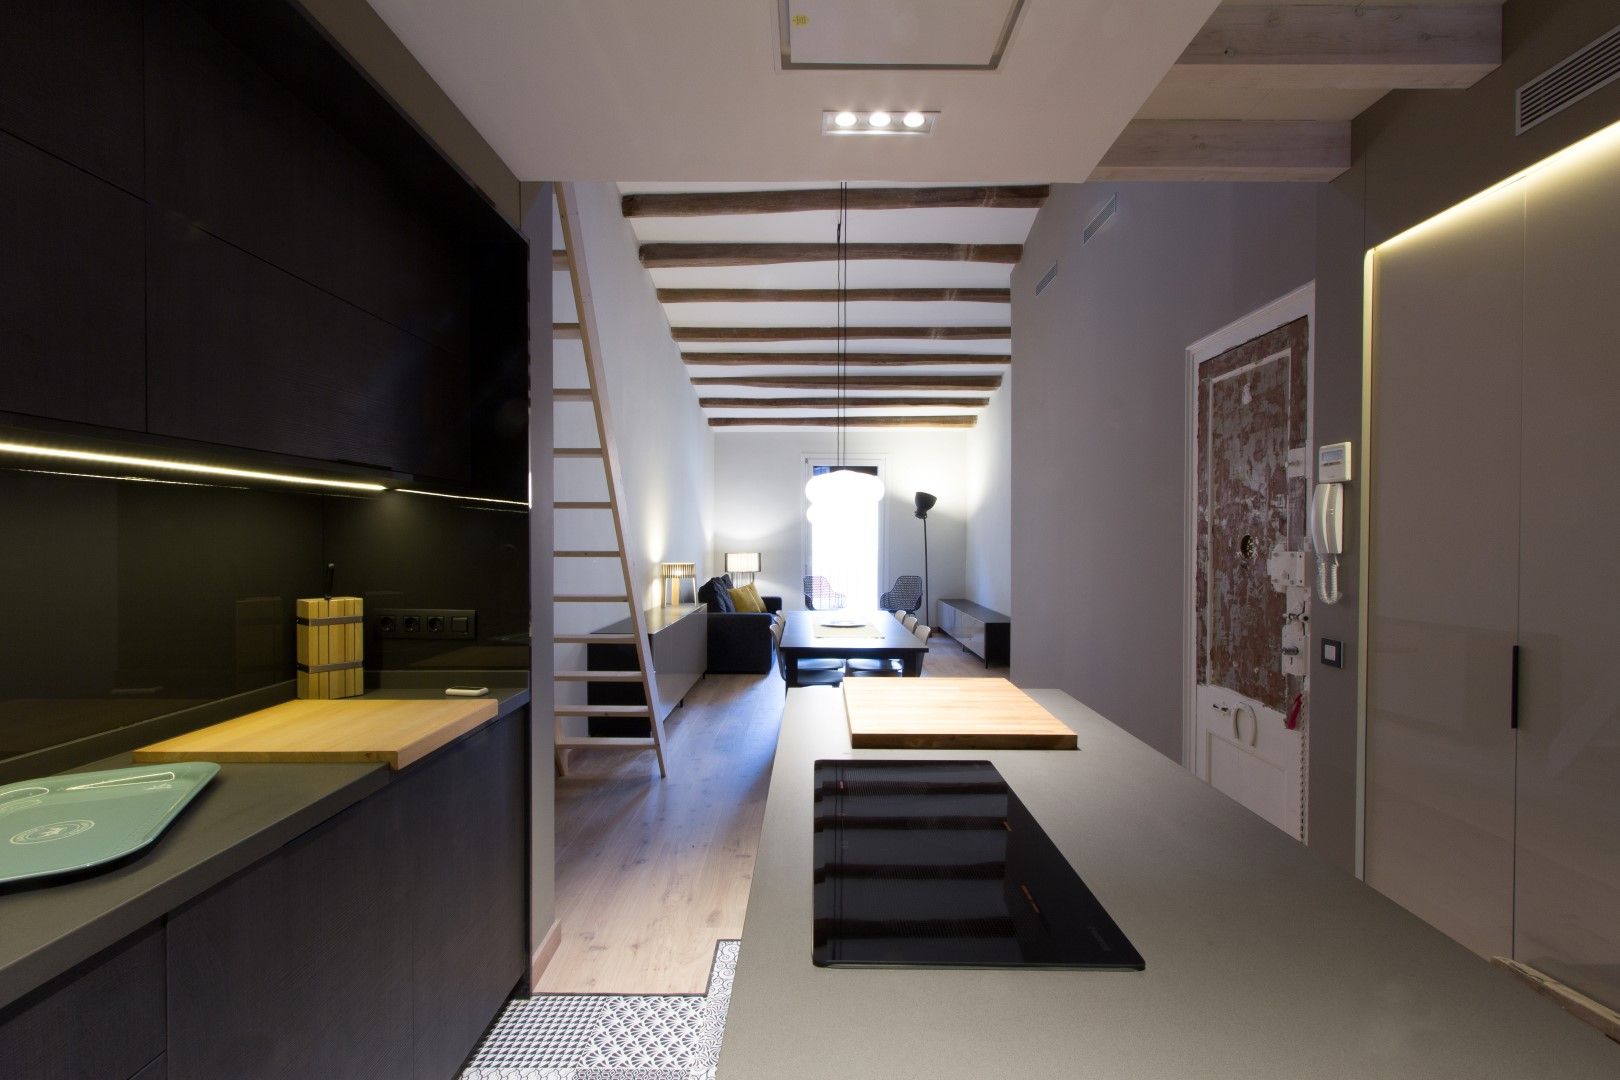 LOFT EN BARCELONA Proyecto de interiorismo para convertir un antiguo piso en un loft donde se valora la calidad del espacio, CREAPROJECTS. Interior design. CREAPROJECTS. Interior design. مطبخ ذو قطع مدمجة